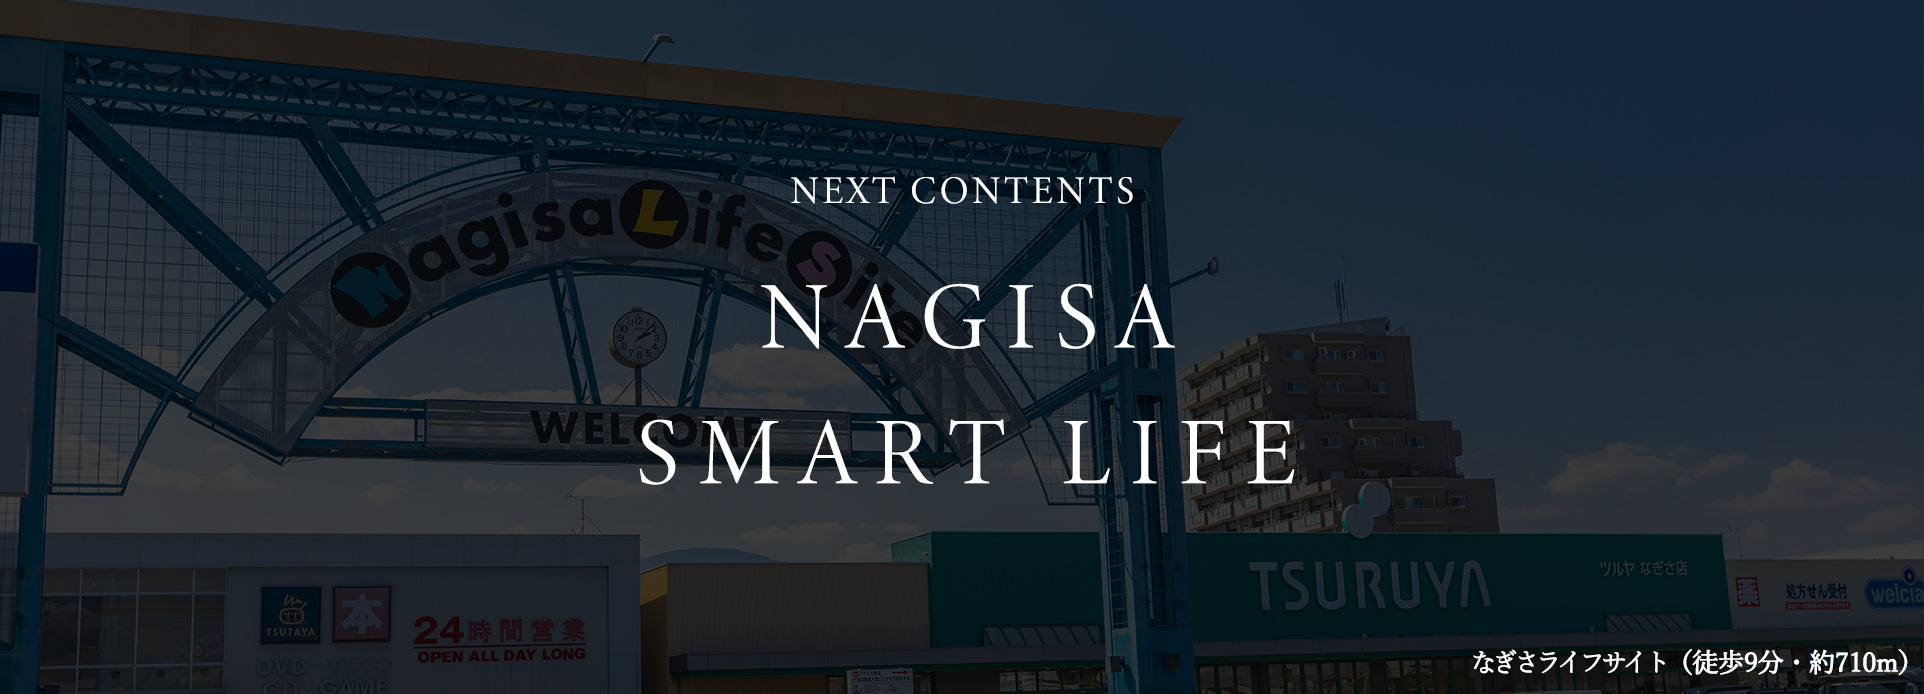 NEXT CONTENTS NAGISA SMART LIFE